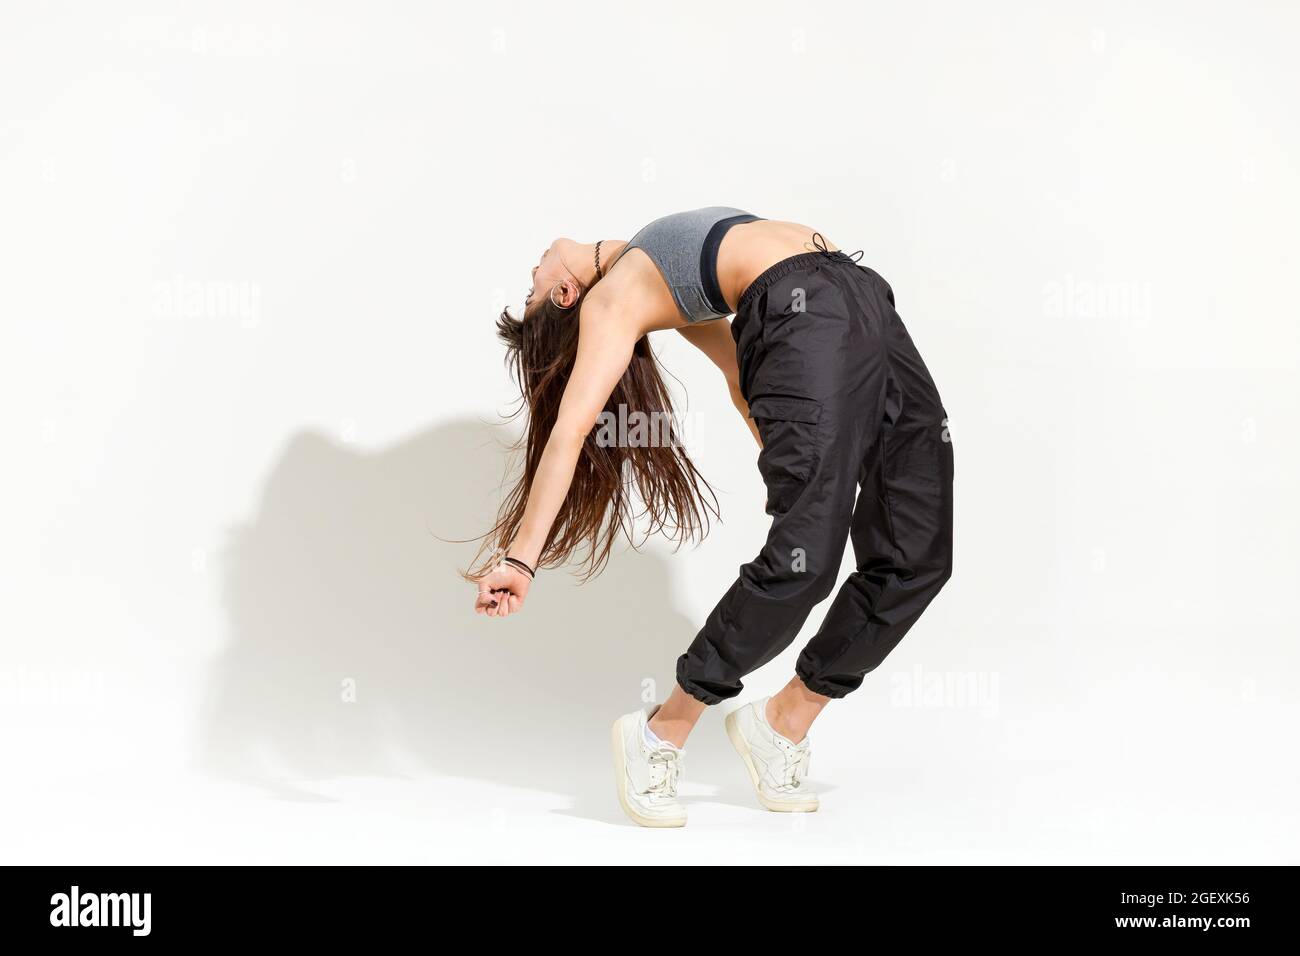 Agile giovane donna flessibile che fa una moderna danza hip hop posa equilibrare le sue dita dei piedi e arcate indietro gettando un'ombra su uno sfondo bianco Foto Stock